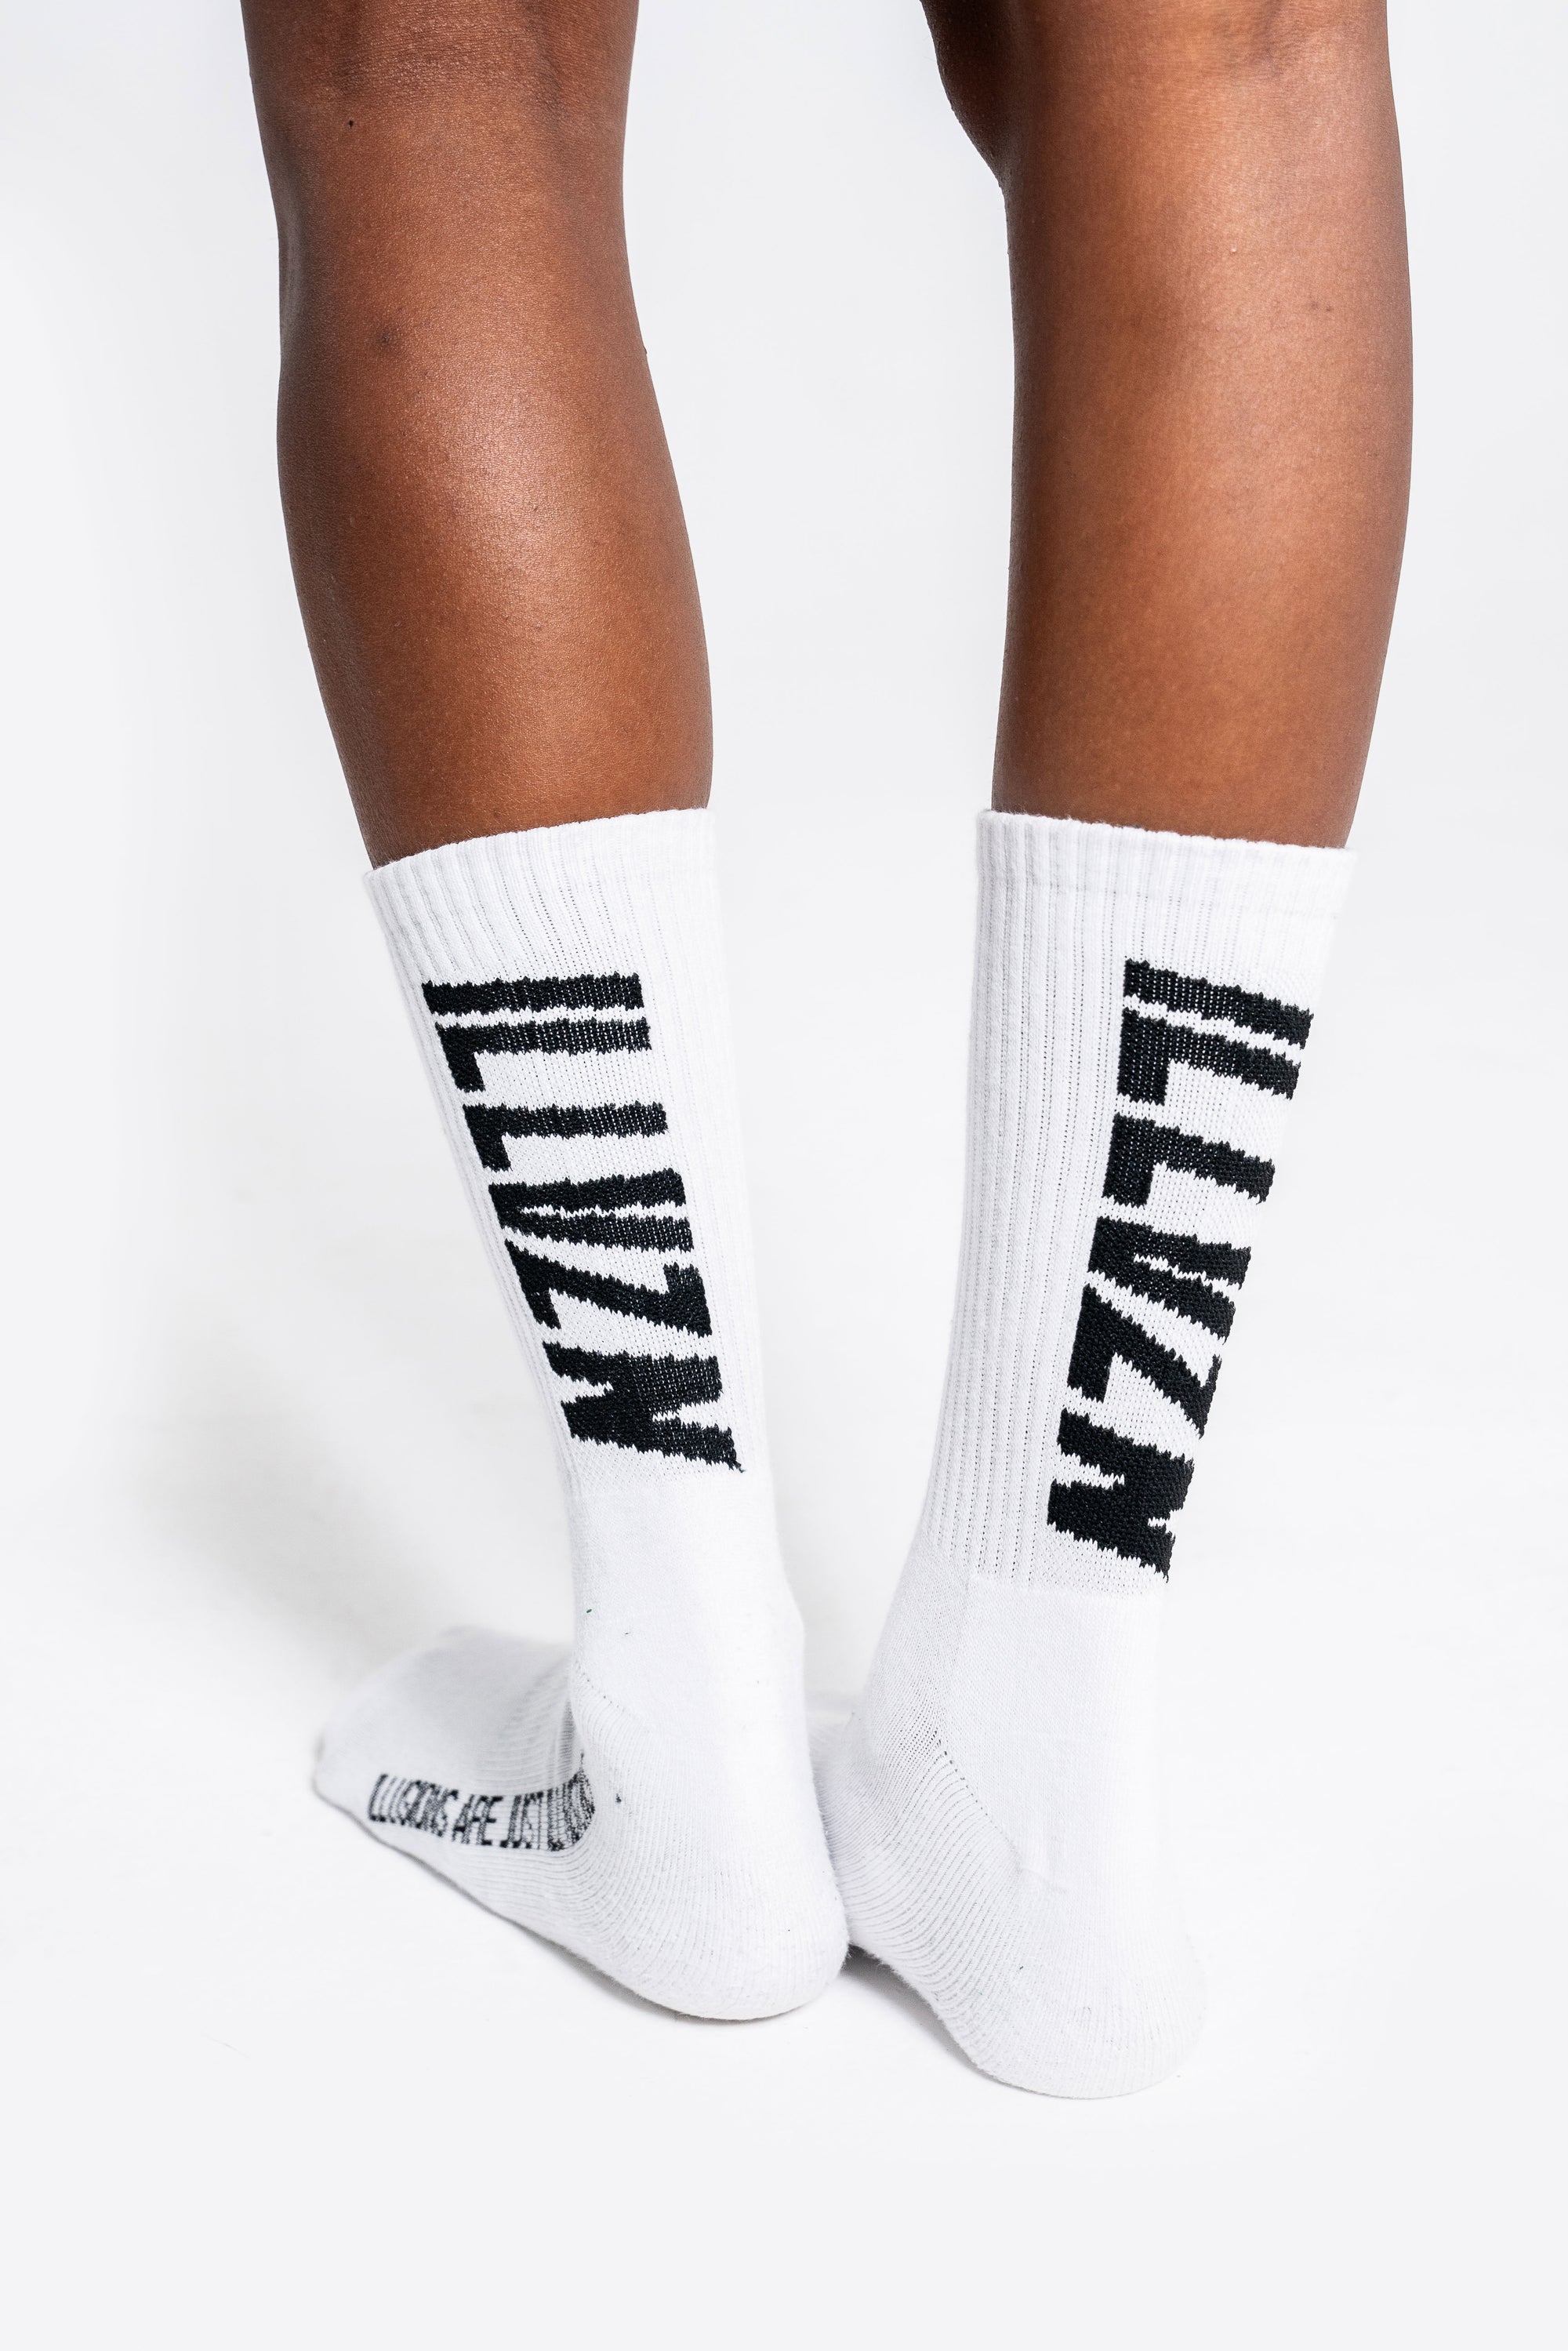 White & Black Socks